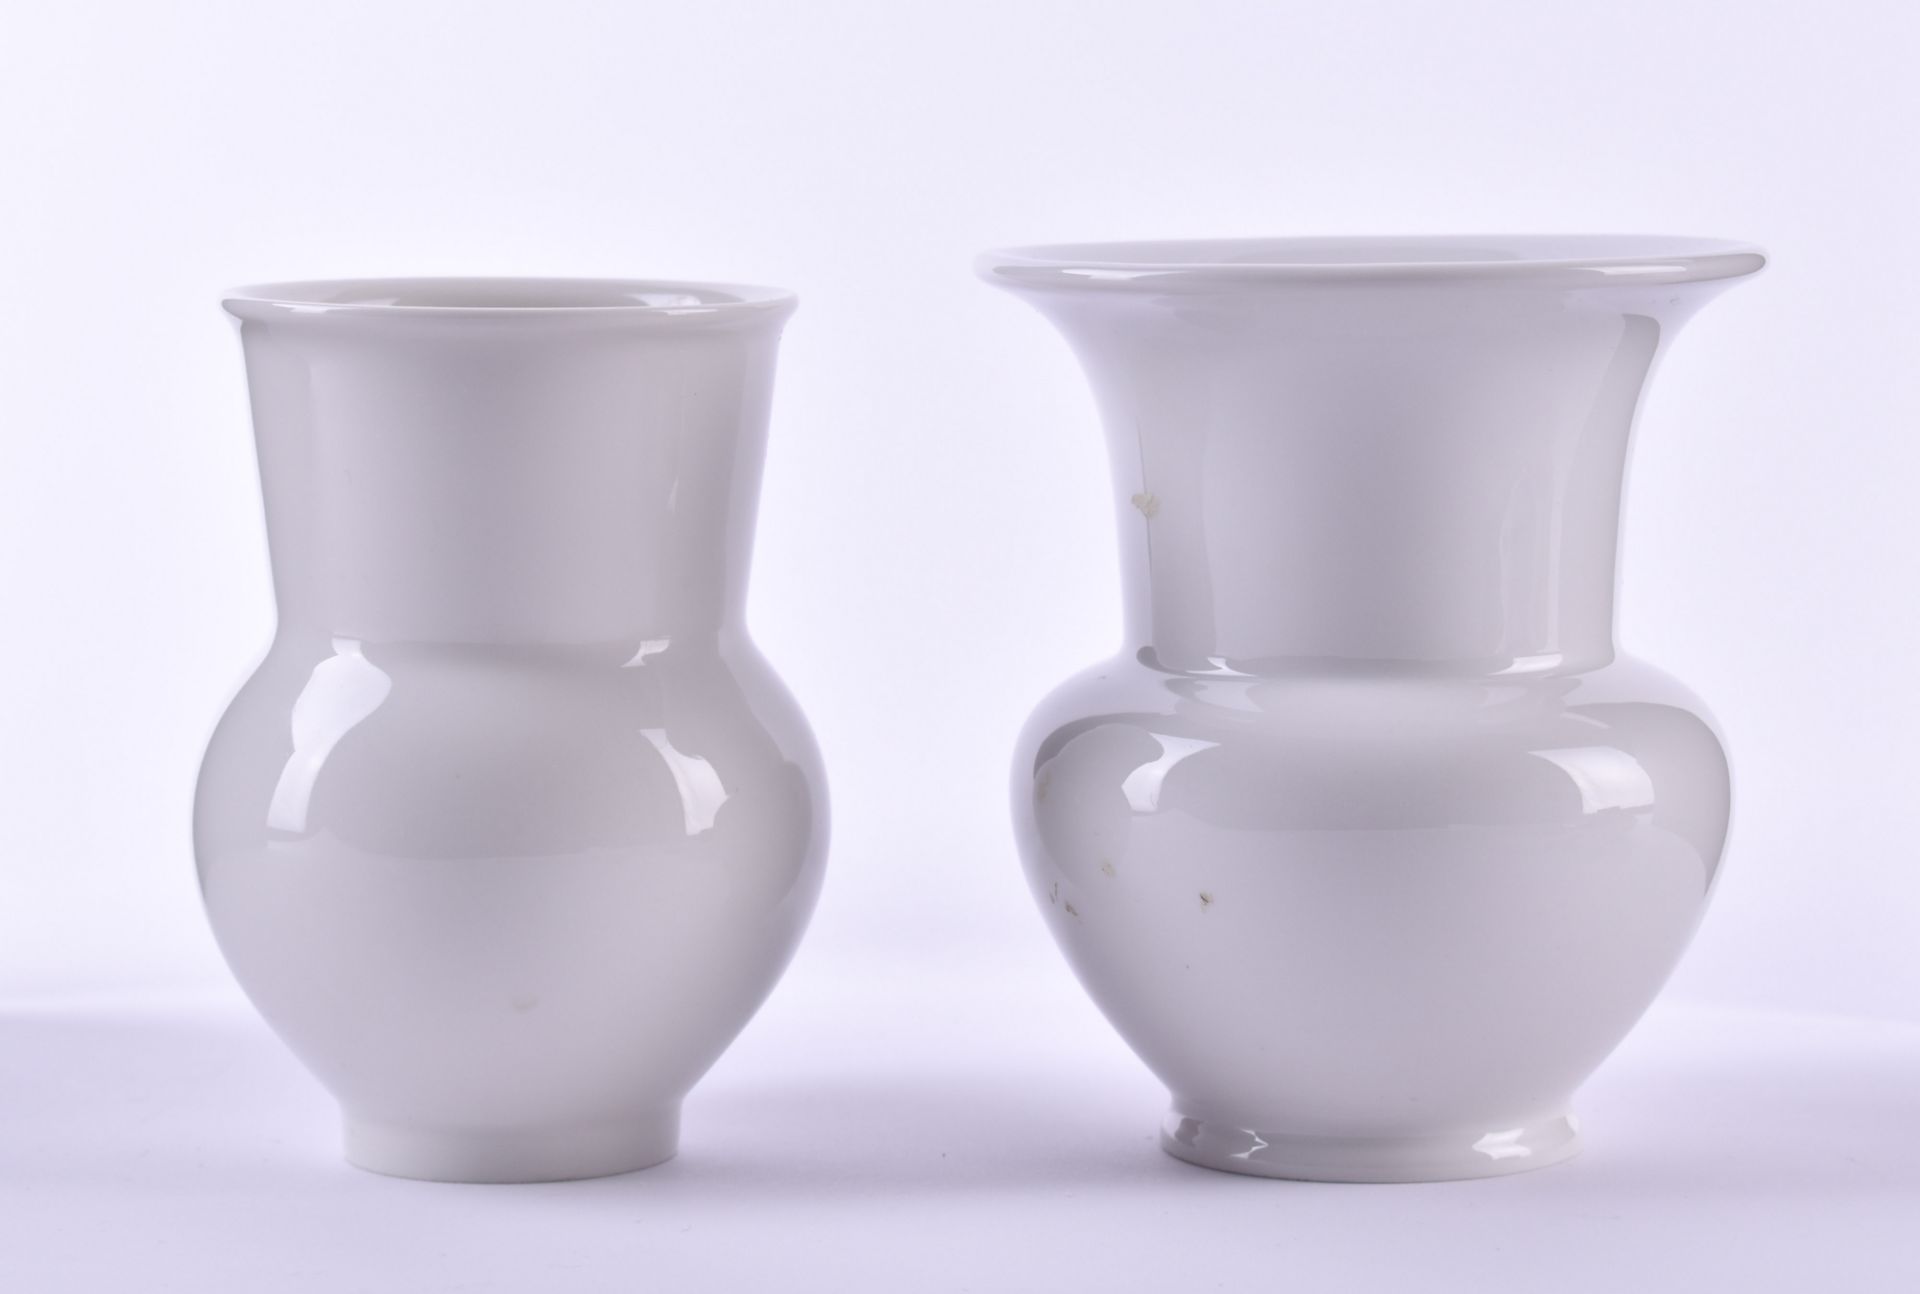 2 vases KPM Berlinwhite porcelain, blue scepter mark, 1st choice, height: 9.5 cm and 10 cm2 Vasen